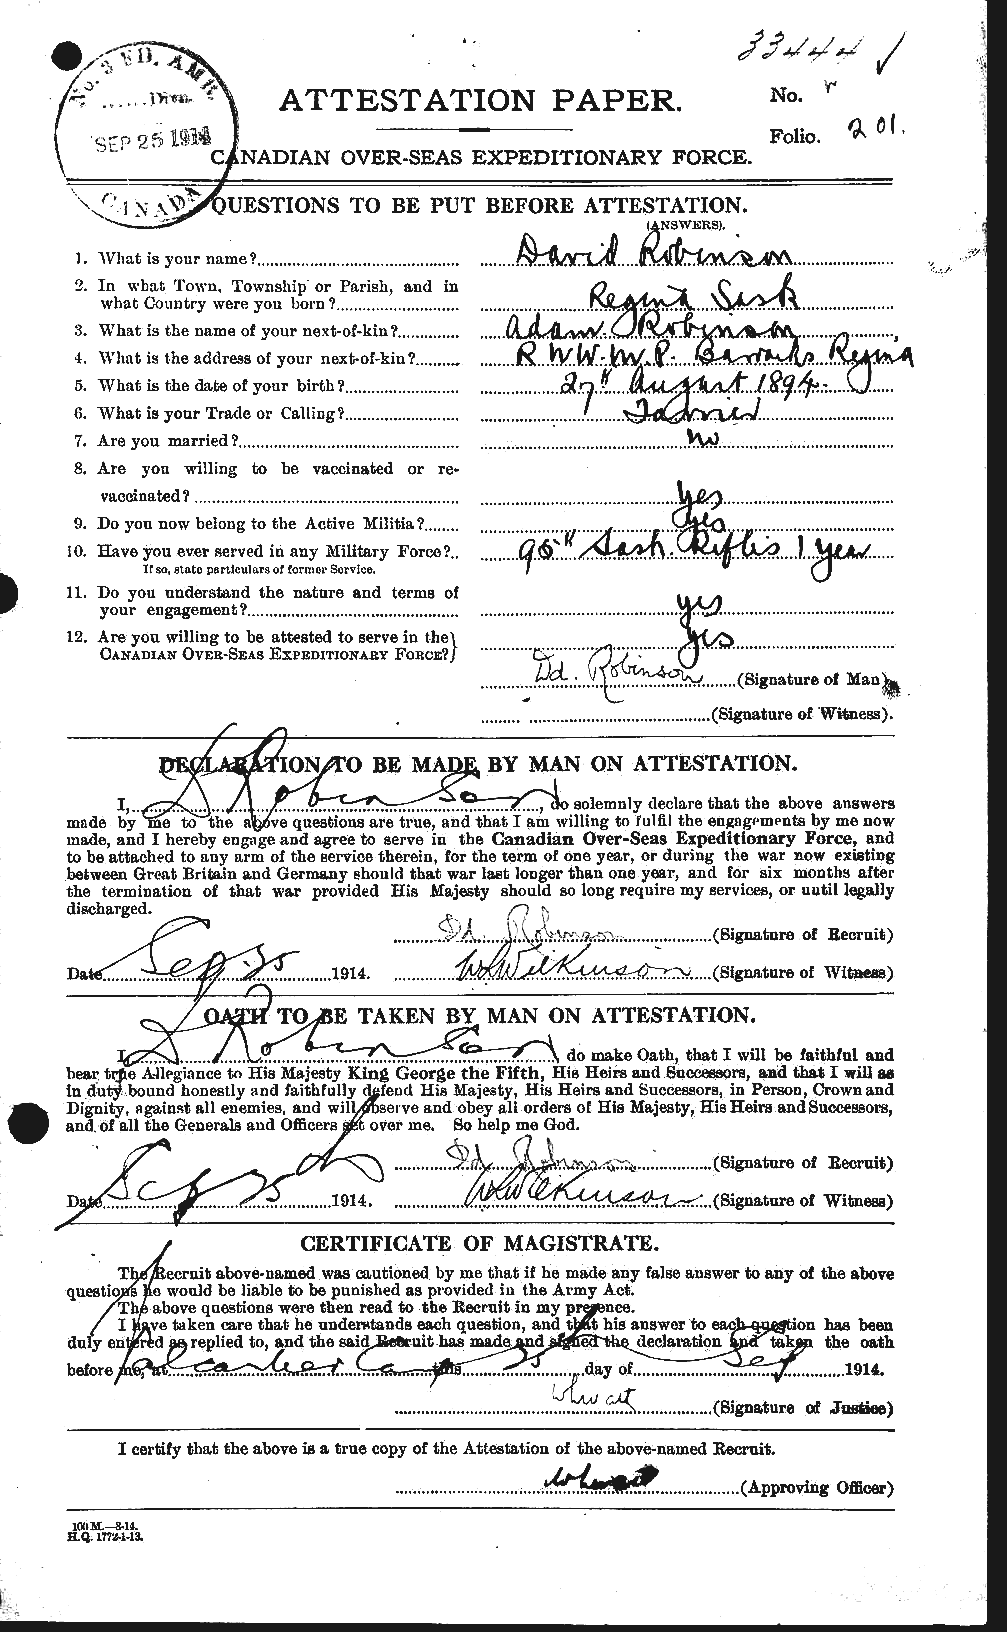 Dossiers du Personnel de la Première Guerre mondiale - CEC 607132a